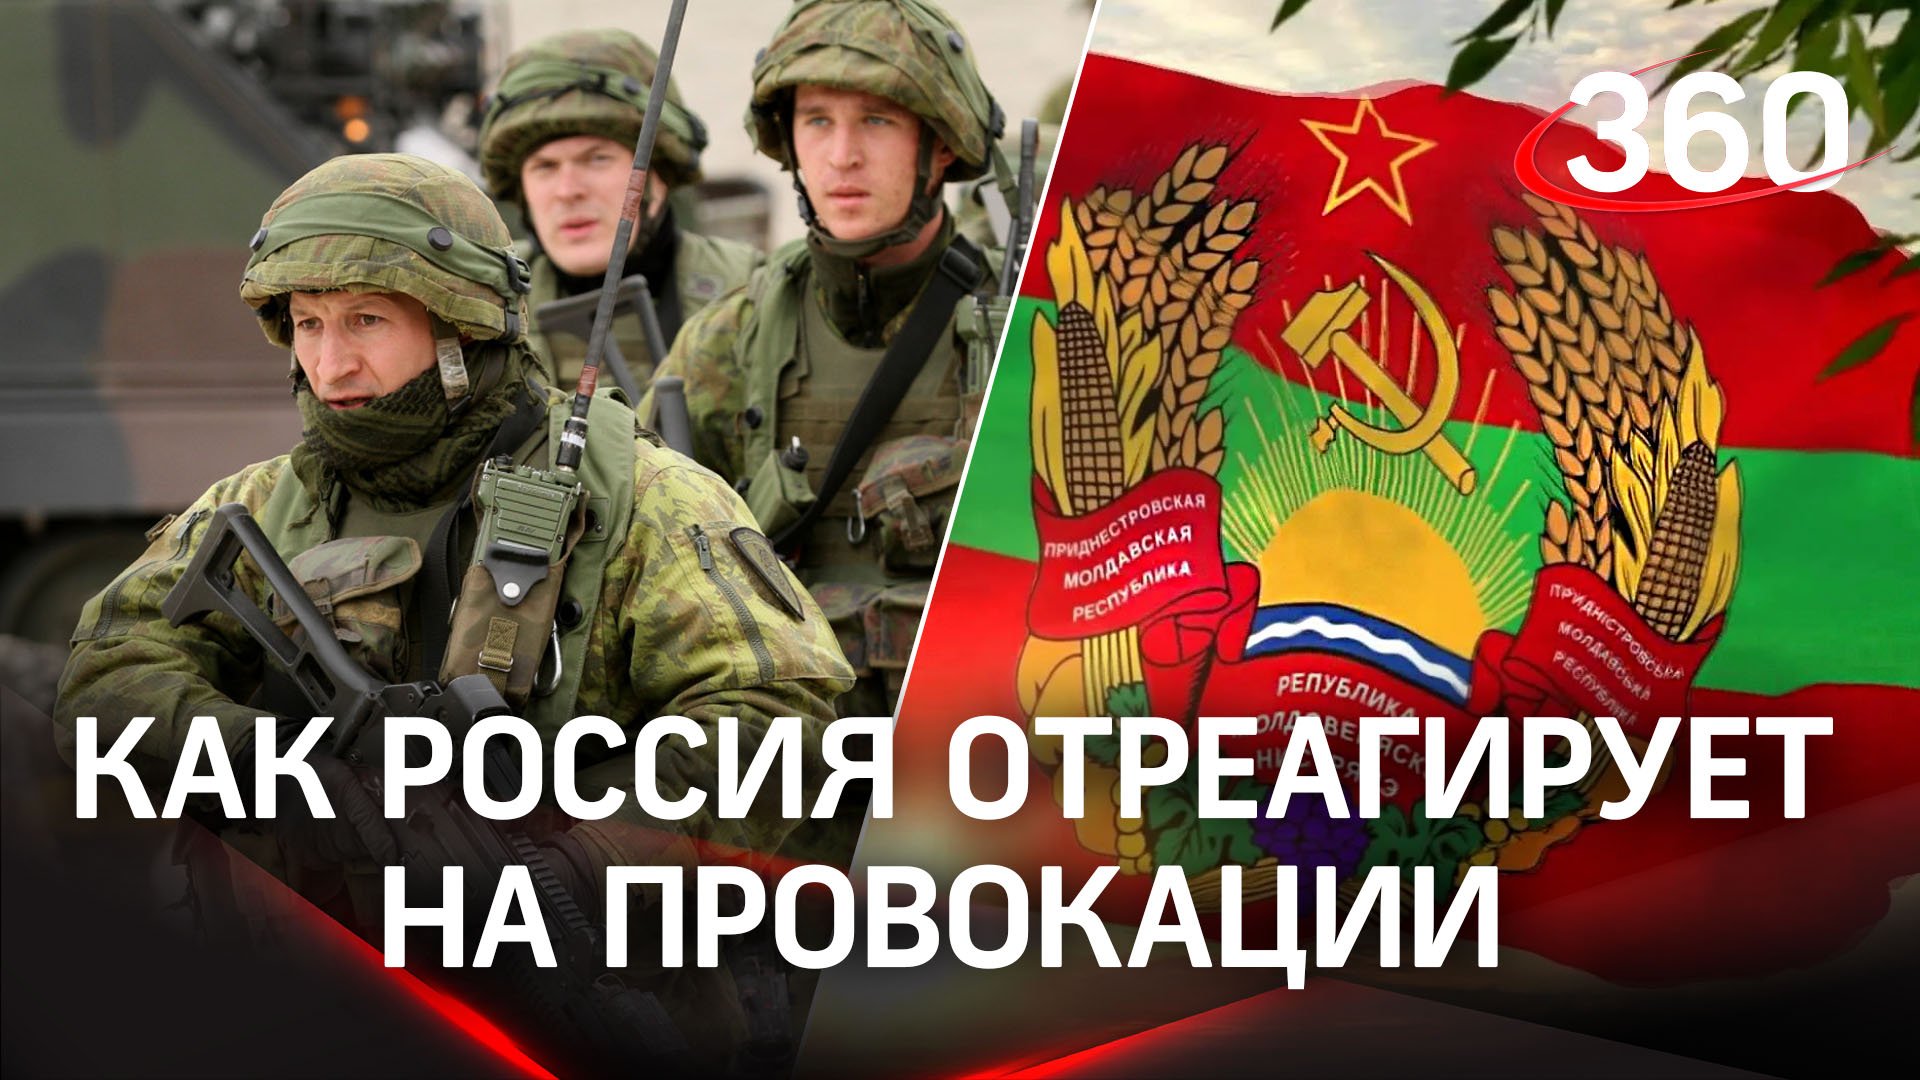 Нападение на миротворцев в Приднестровье будет расценено как нападение на Россию – МИД РФ